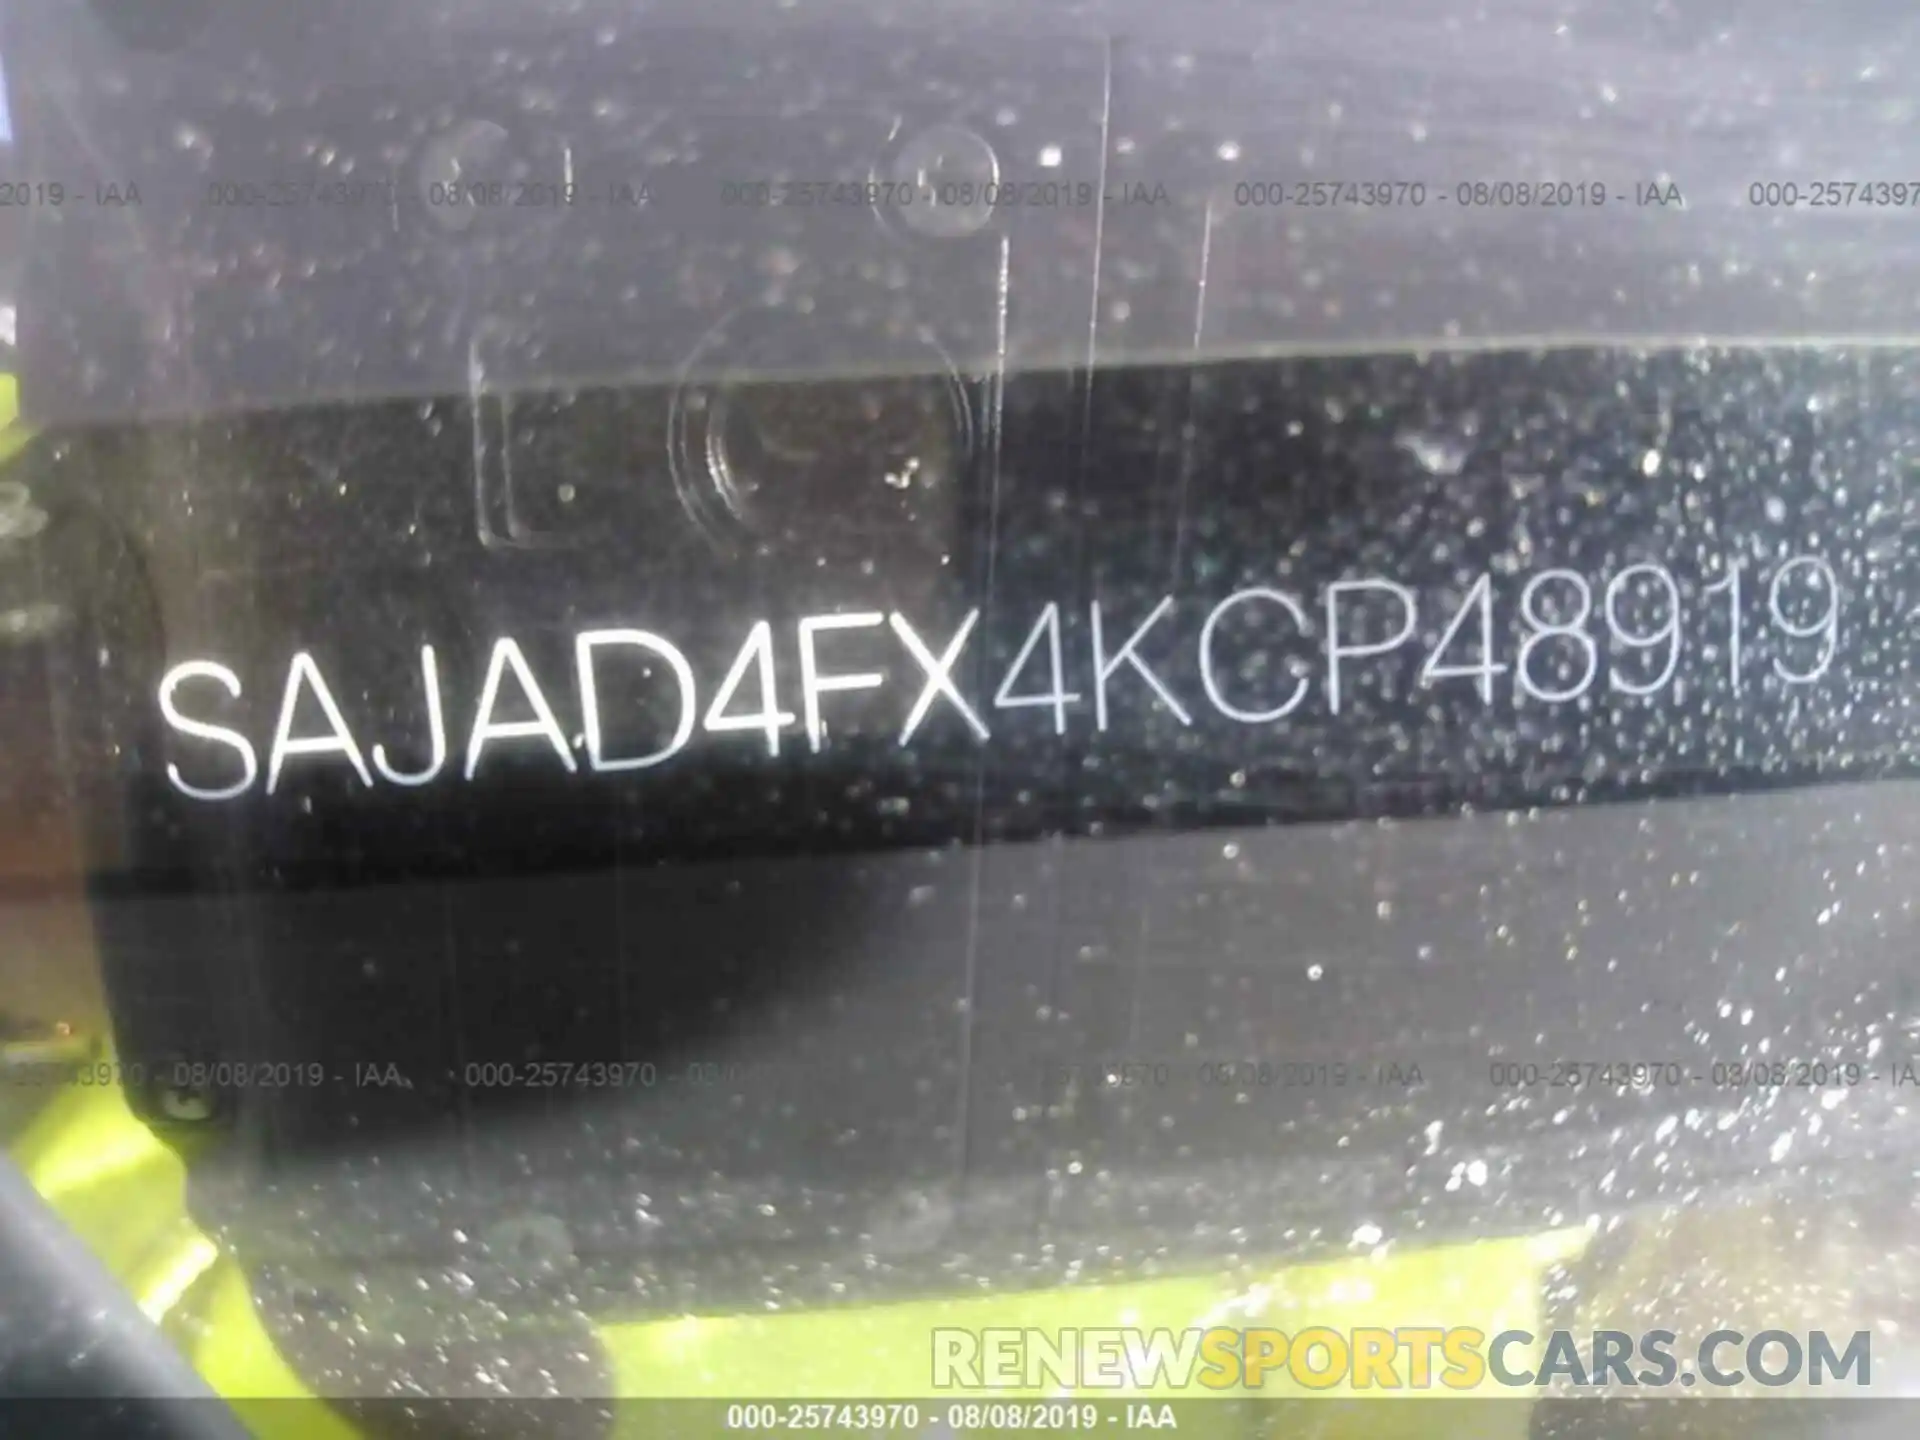 9 Photograph of a damaged car SAJAD4FX4KCP48919 JAGUAR XE 2019